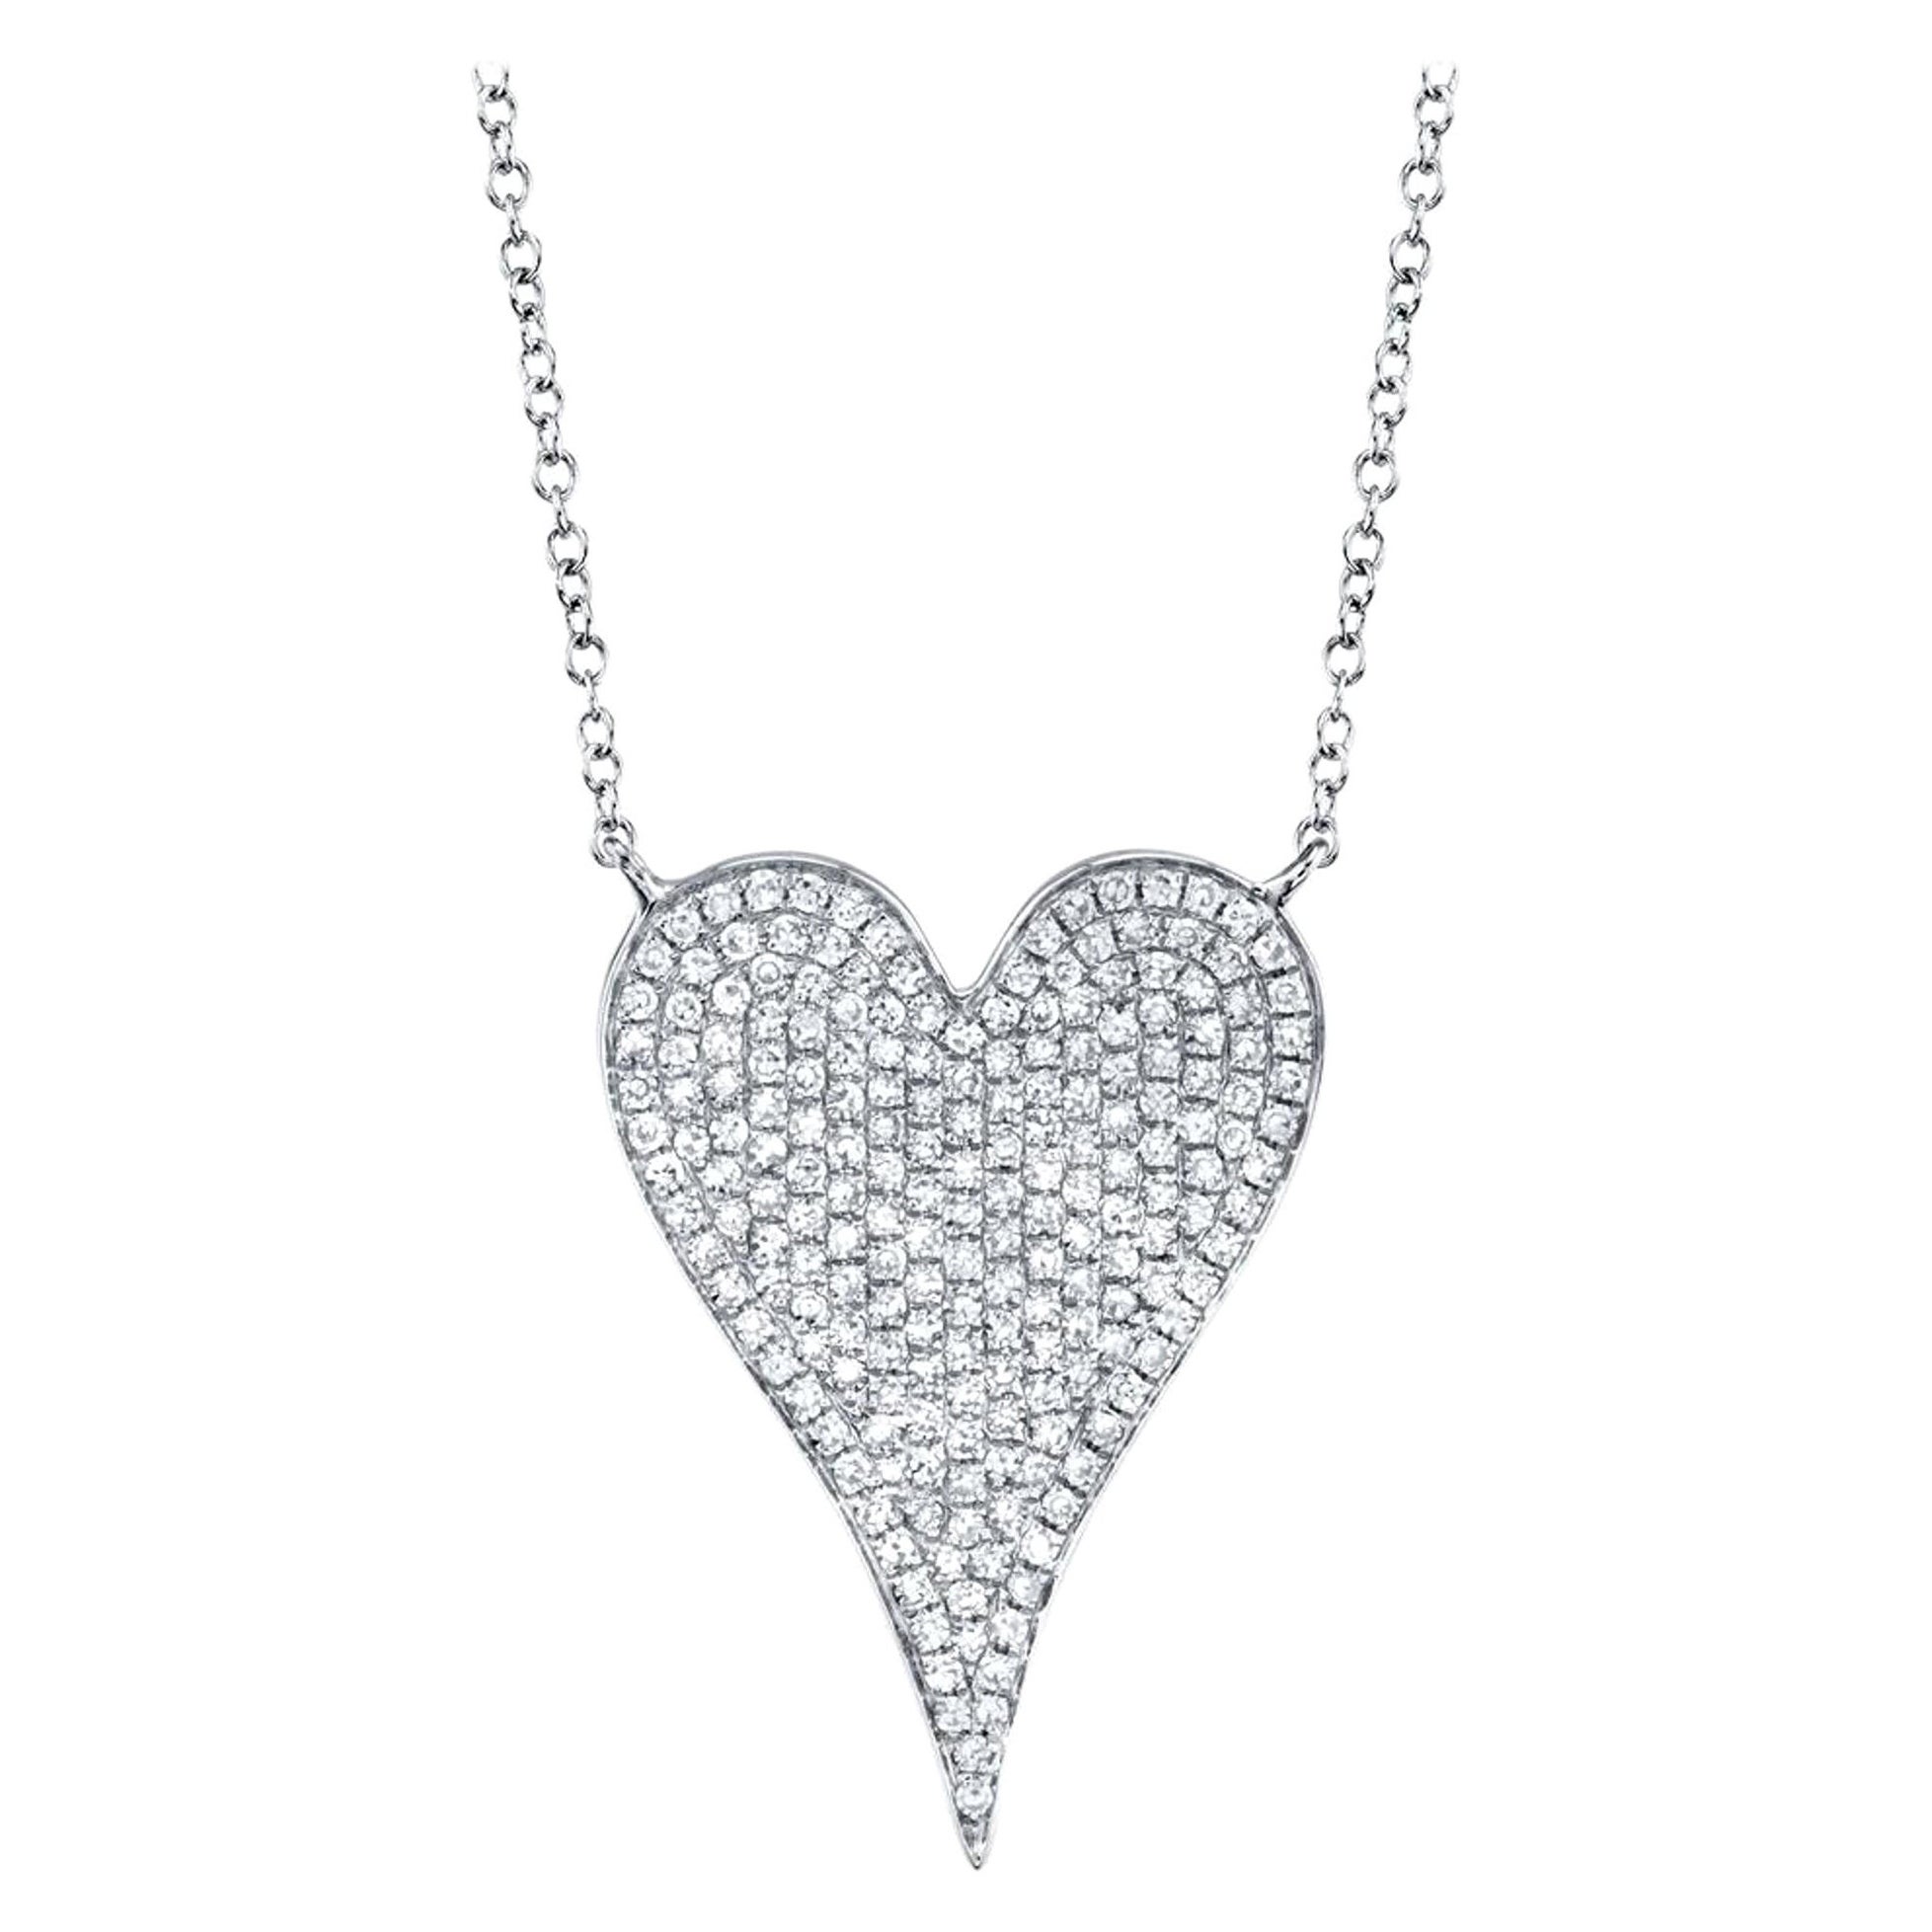 Rachel Koen Pave Diamond Heart Pendant Necklace 14K White Gold 0.43cttw For Sale